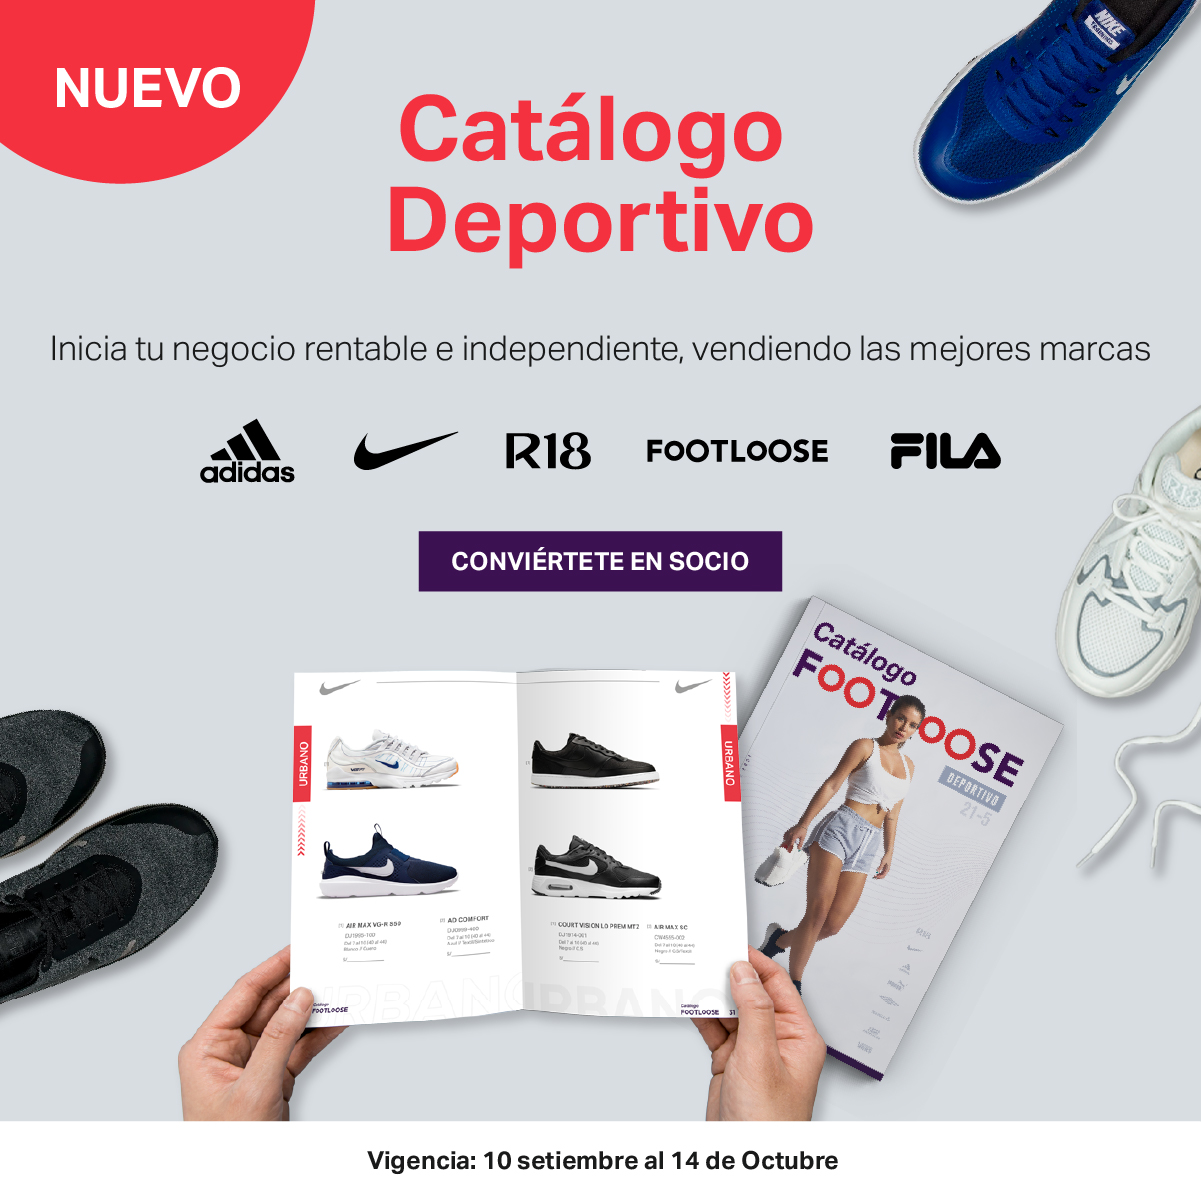 FootloosePeru on Twitter: "Disfruta de las mejores marcas con nuestro nuevo catálogo deportivo y emprende tu negocio desde Marcas como: Adidas, Nike, Fila y más😎 directamente desde nuestra web: